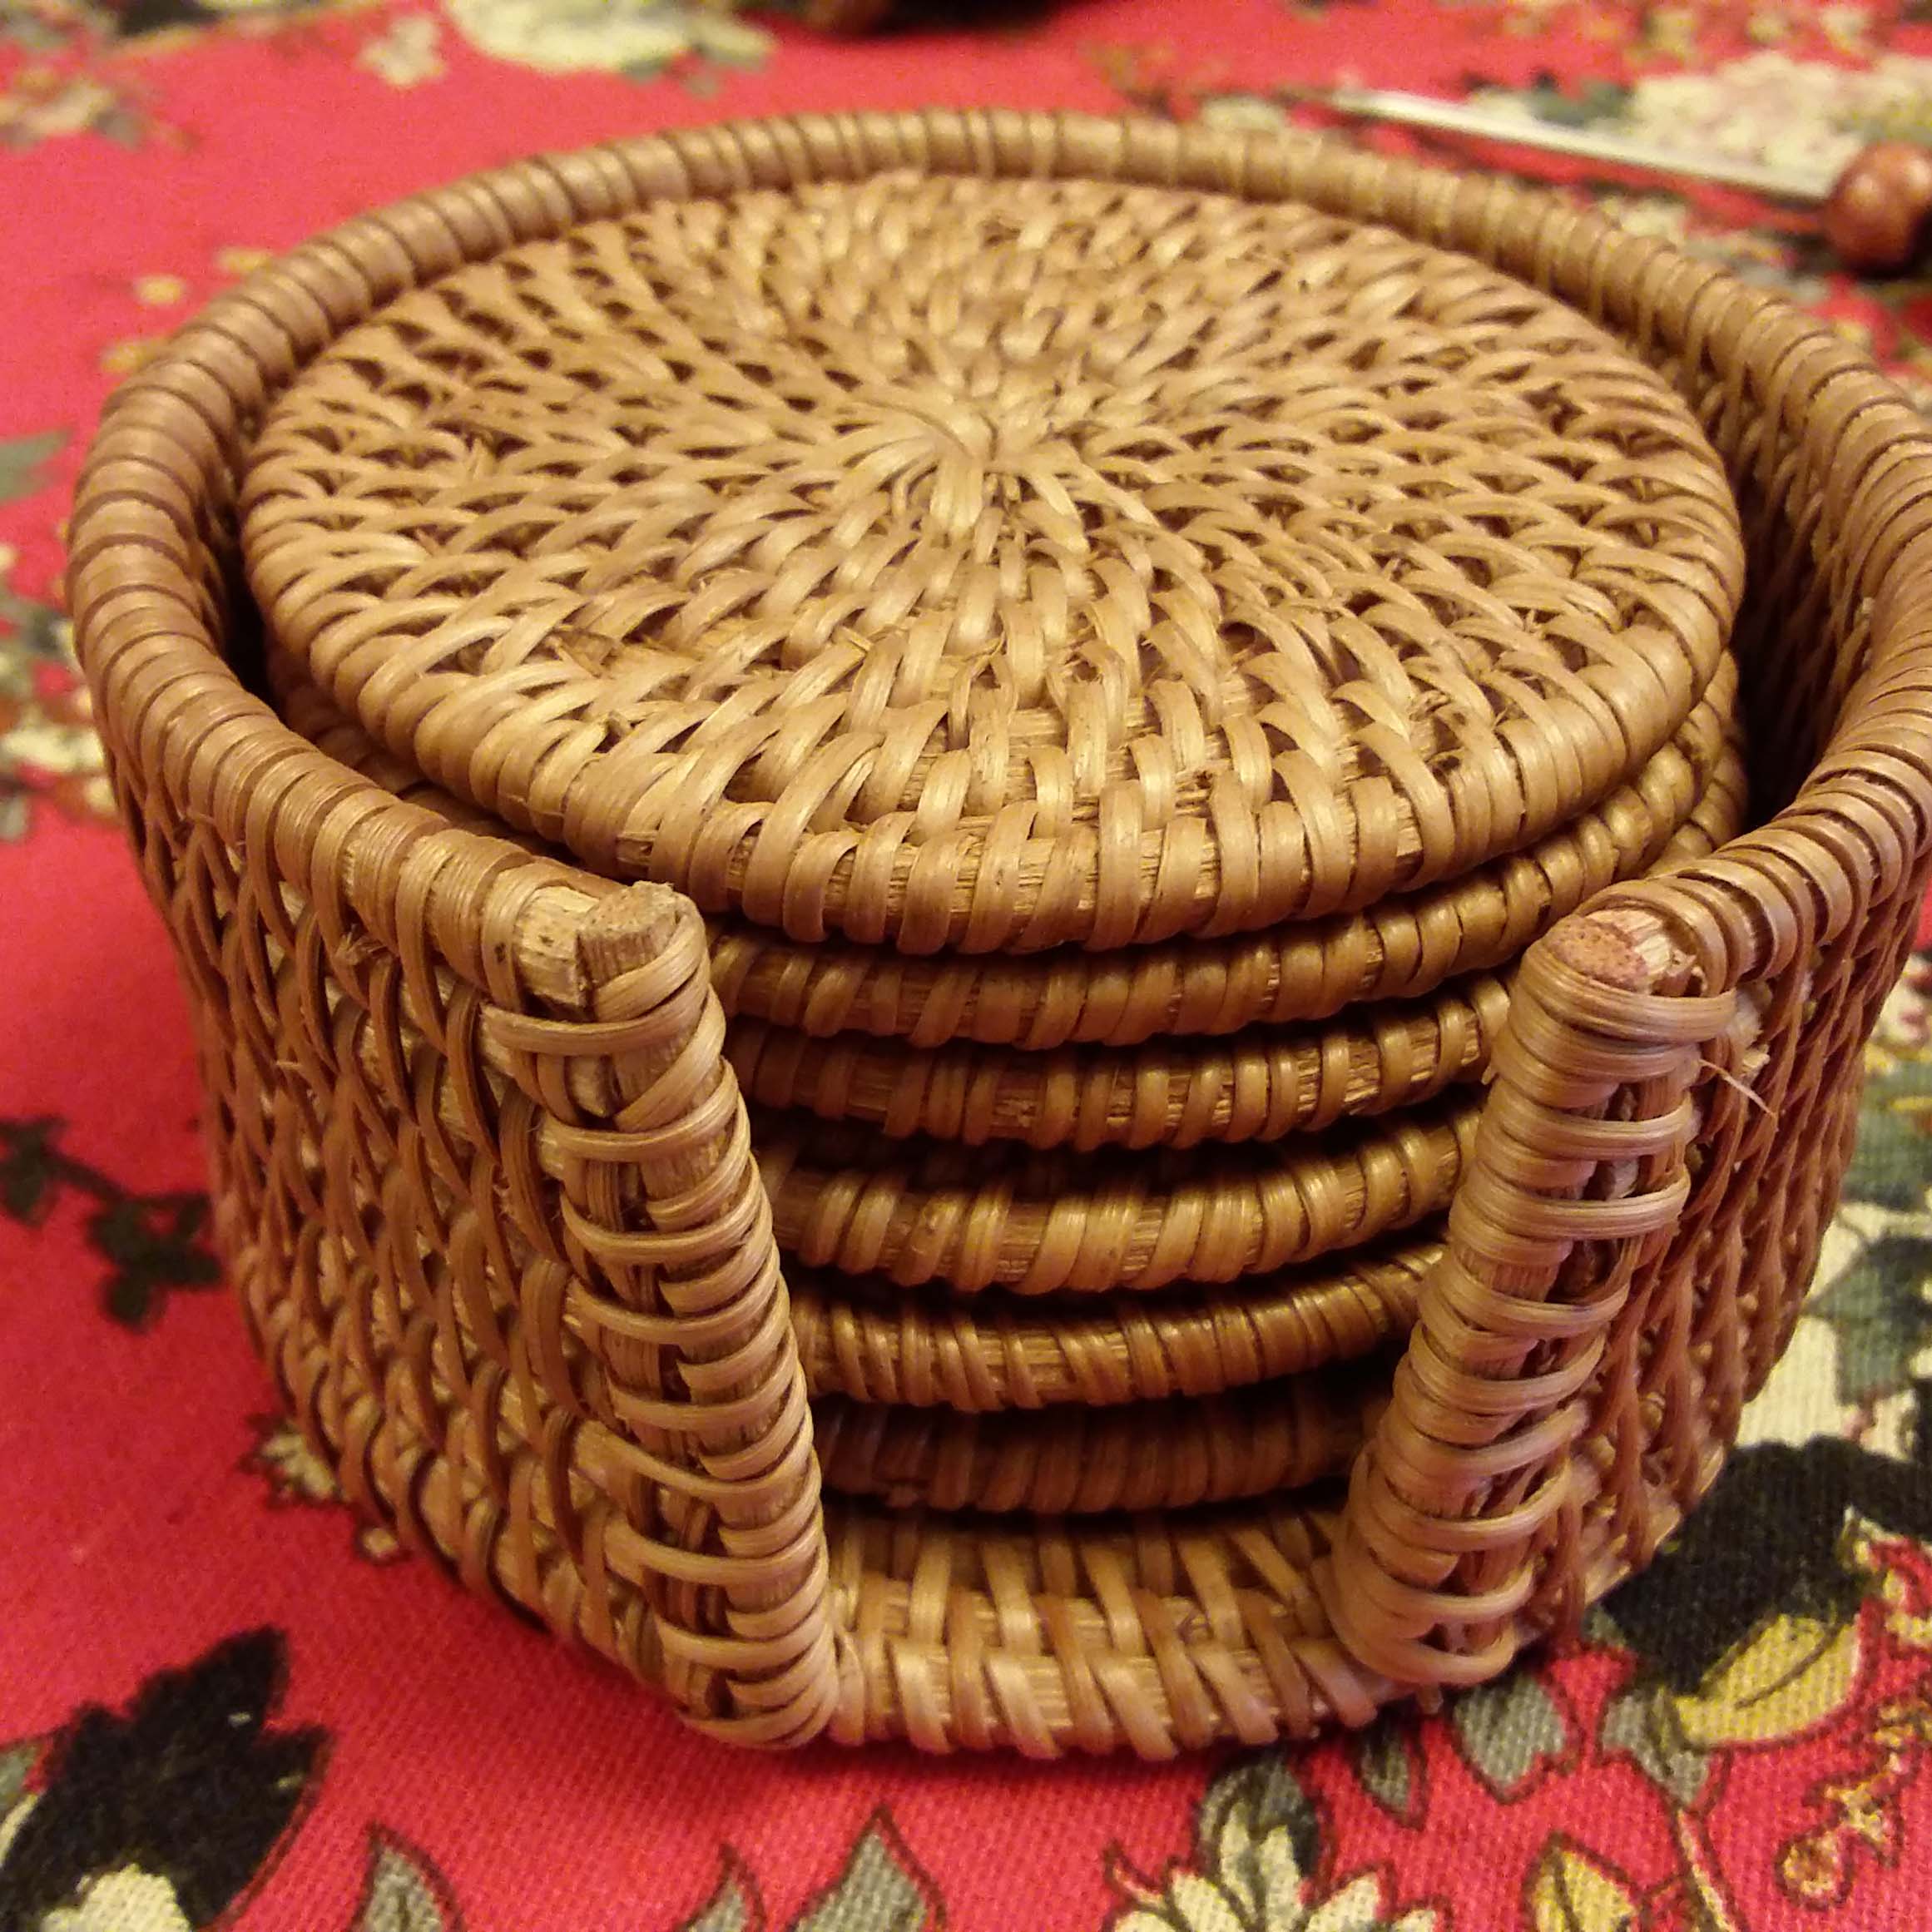 茶来了 茶具杯垫 茶道组配件 藕形圆形方形雕花布艺竹制 藤编杯垫